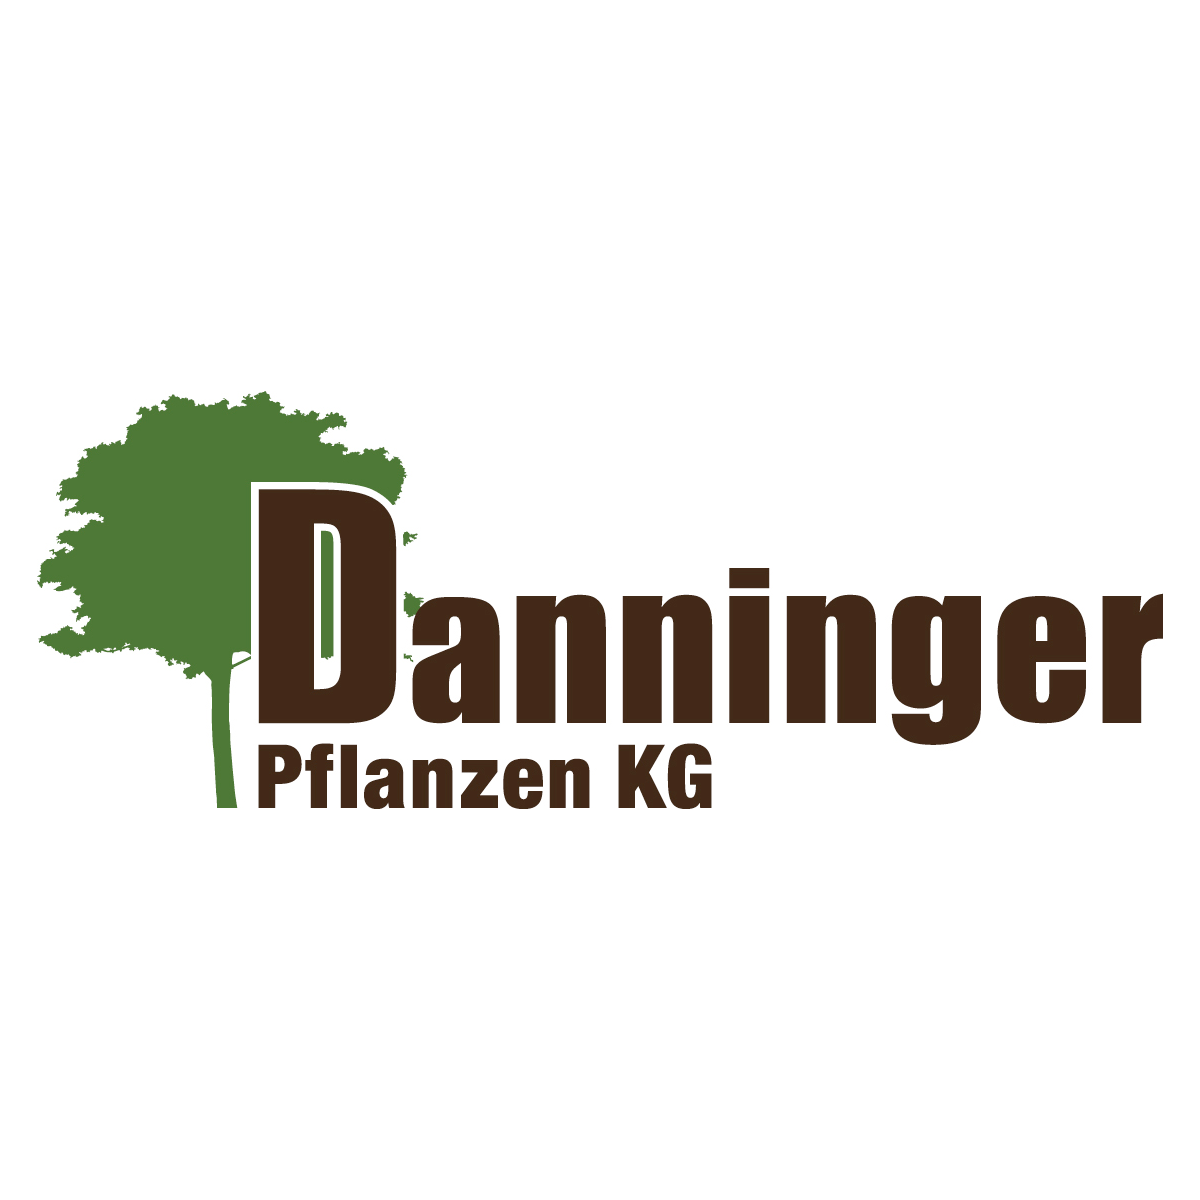 Danninger Pflanzen KG